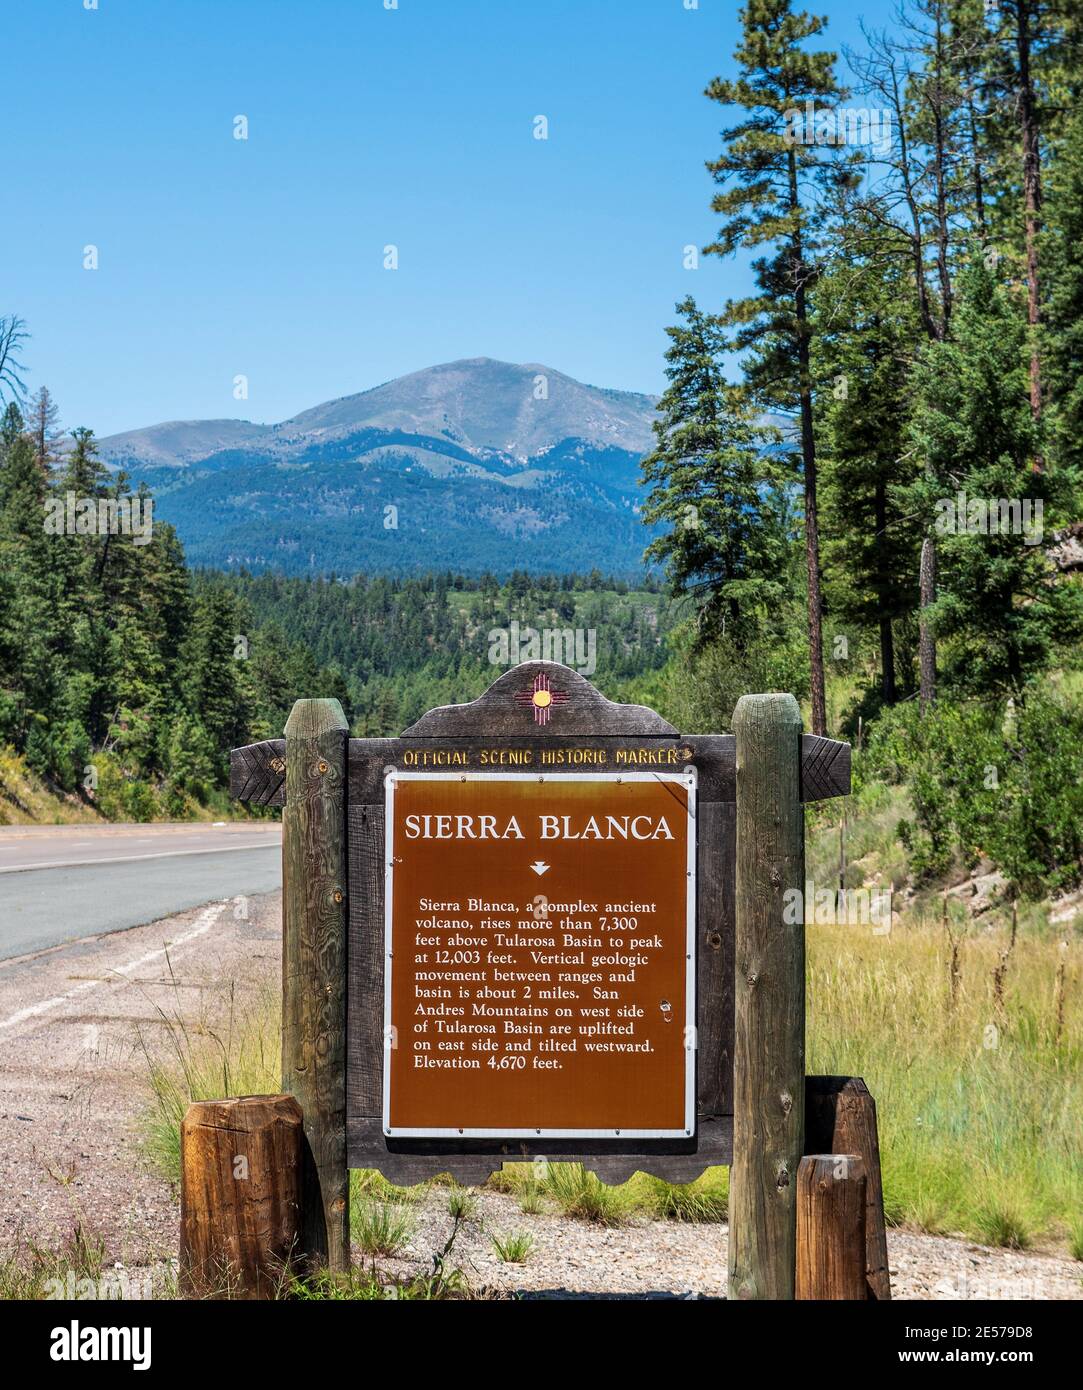 Sierra Blanca Mountain Peak near Ruidoso, New Mexico, USA Stock Photo